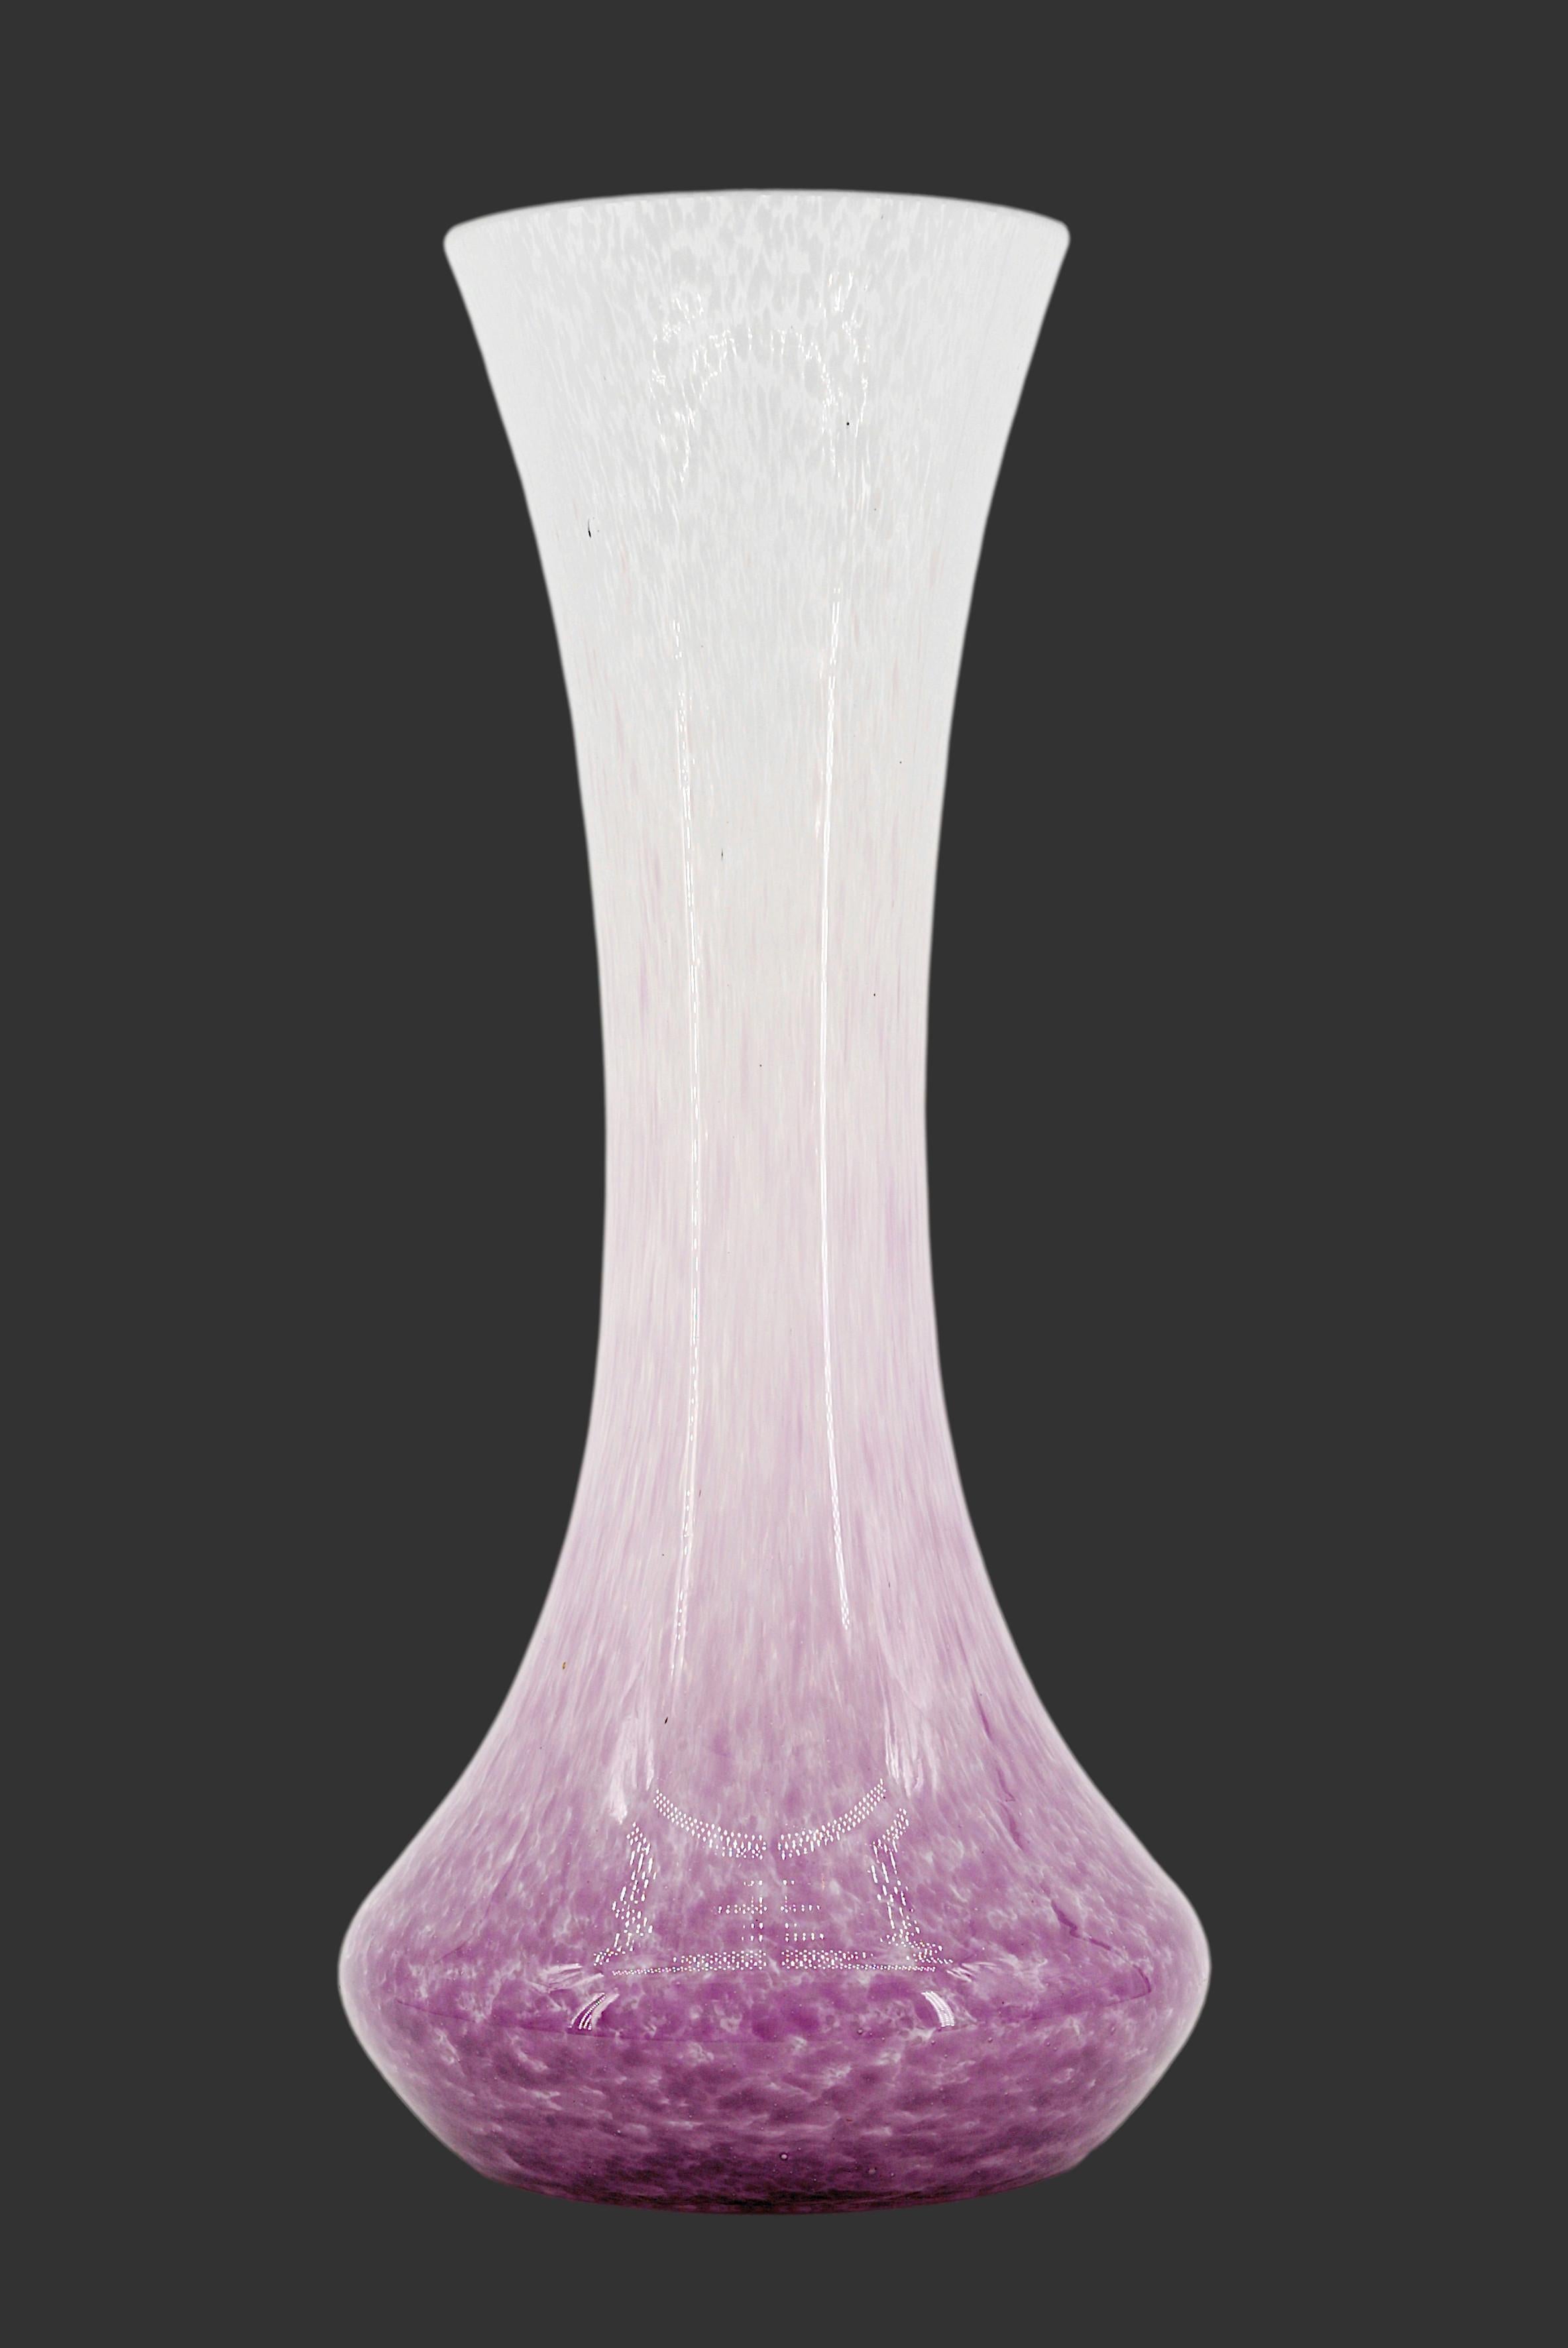 Vase Art déco français par Andre DELATTE (Jarville, près de Nancy), France, fin des années 1920. Verre tacheté. Double vitrage. Des émaux violets et blancs sont appliqués entre les deux couches. Hauteur : 13.8